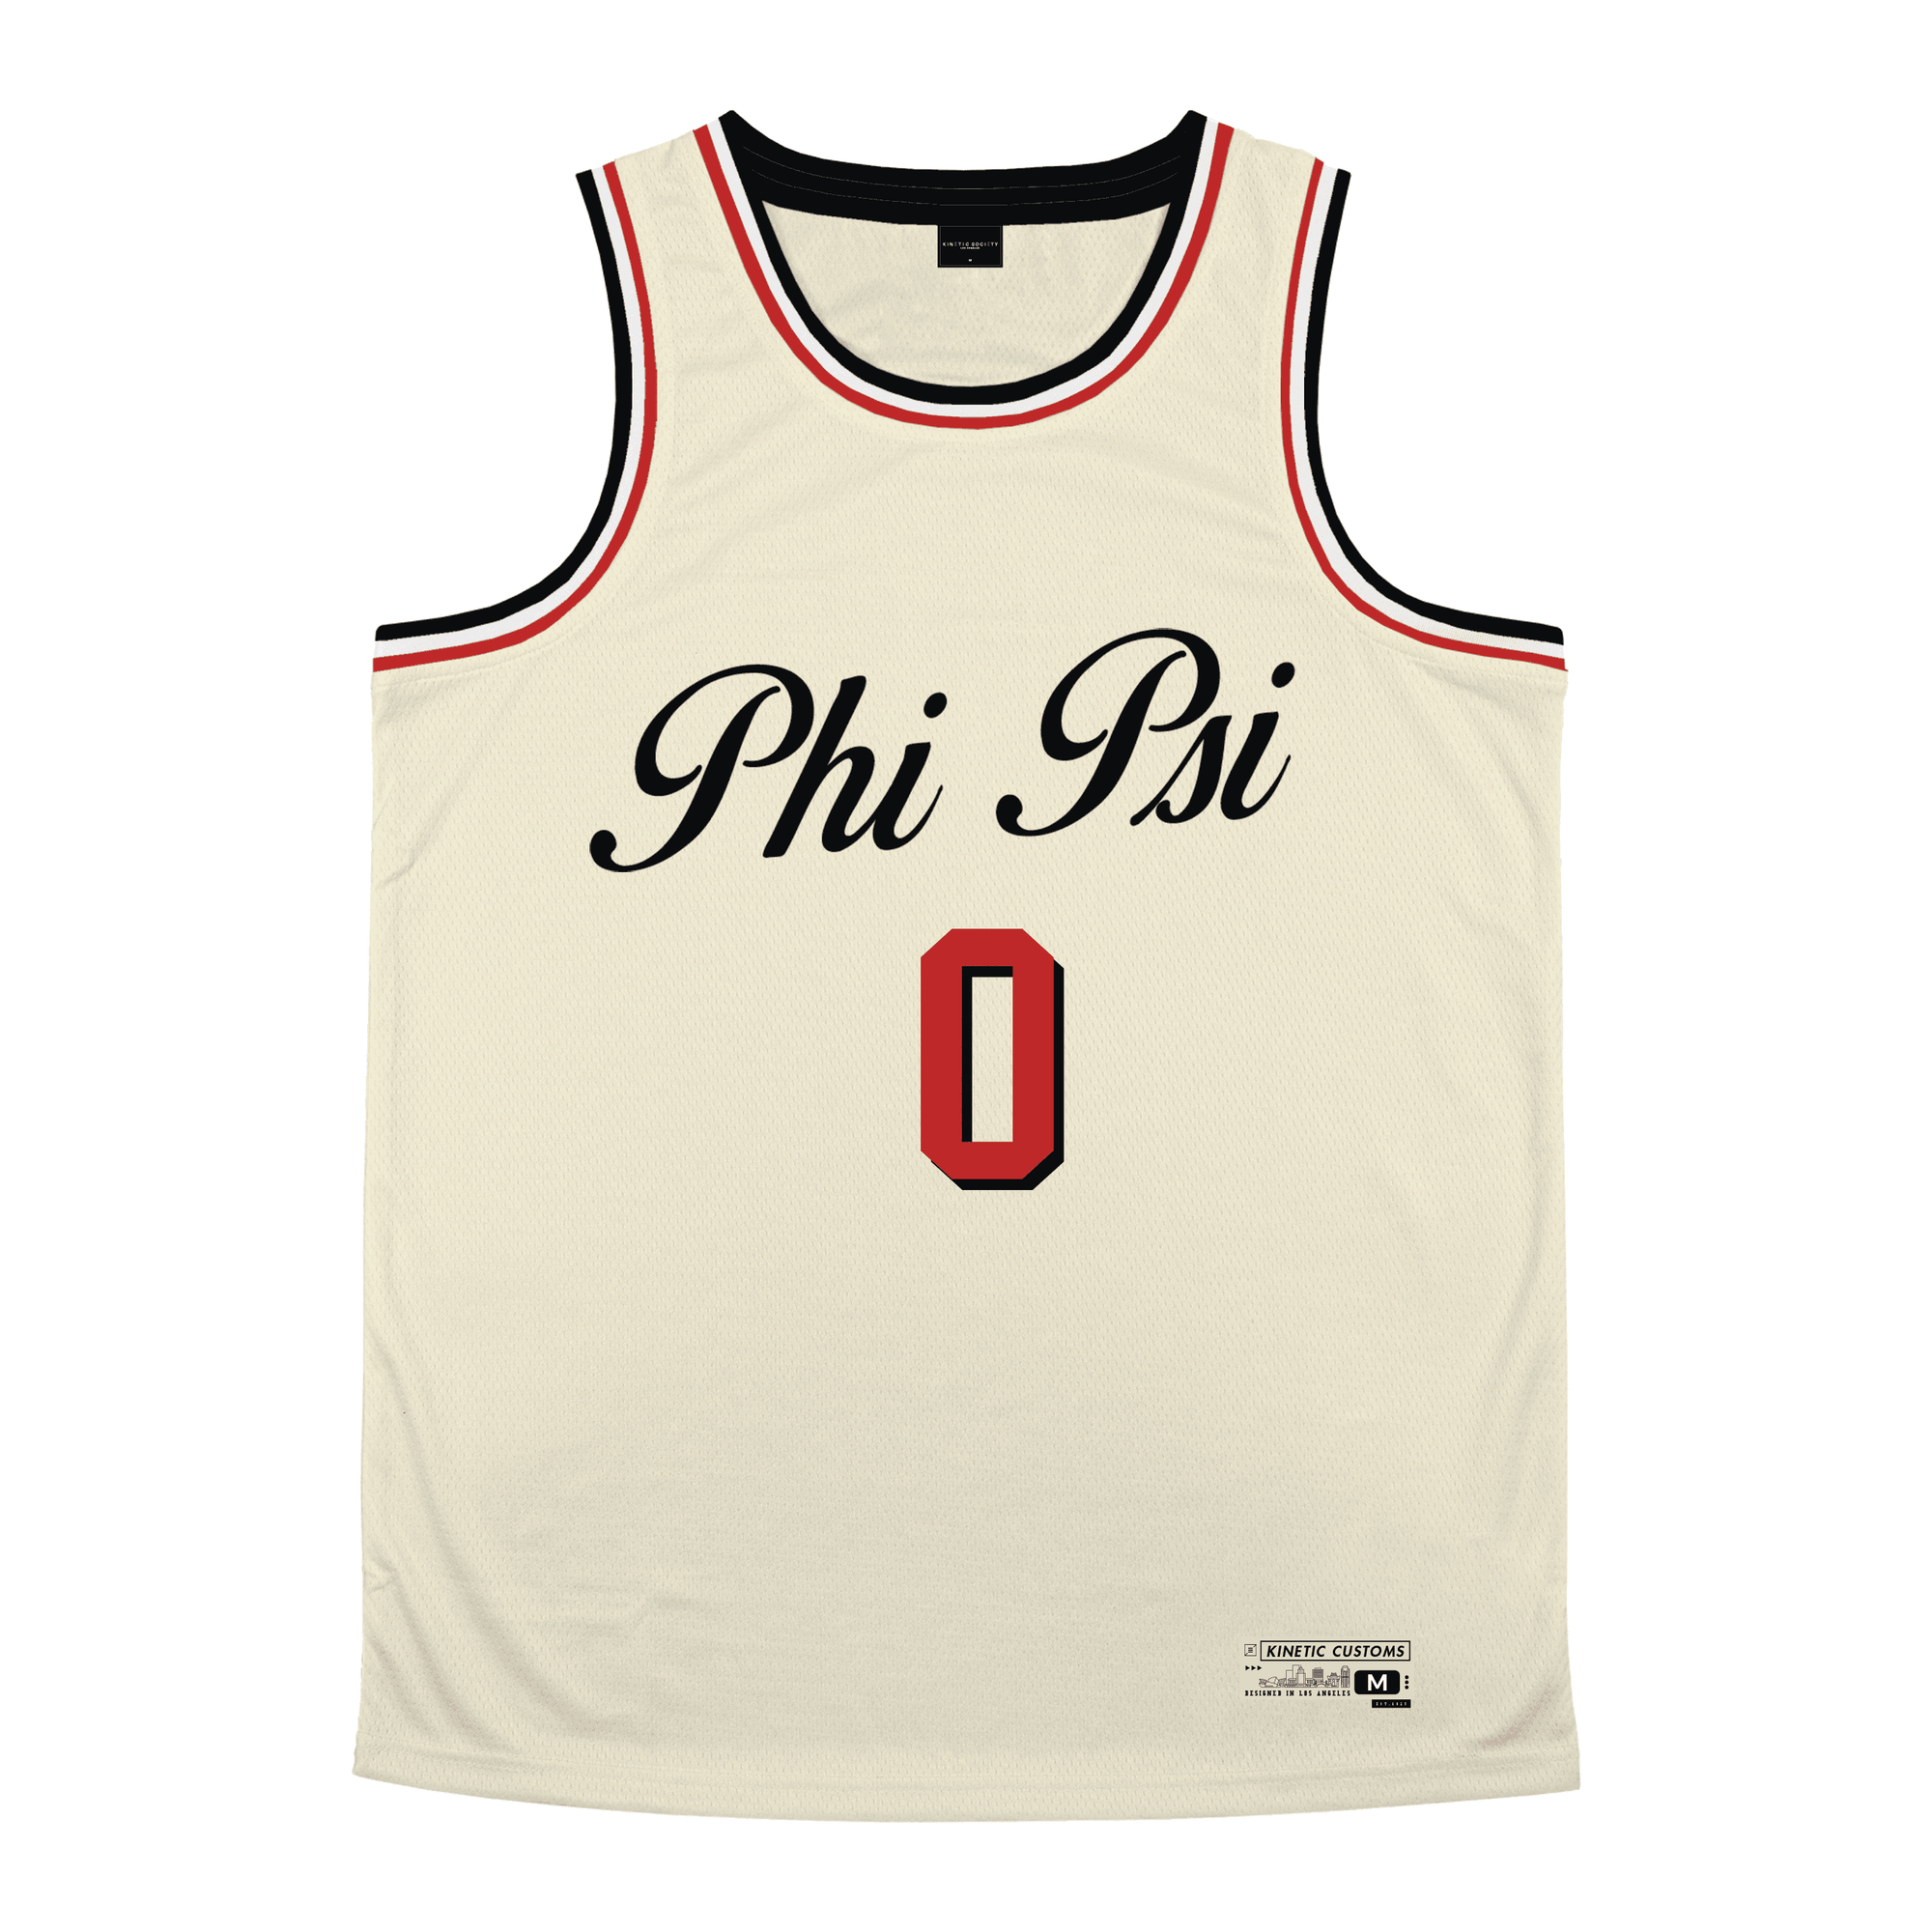 Phi Kappa Psi - VIntage Cream Basketball Jersey